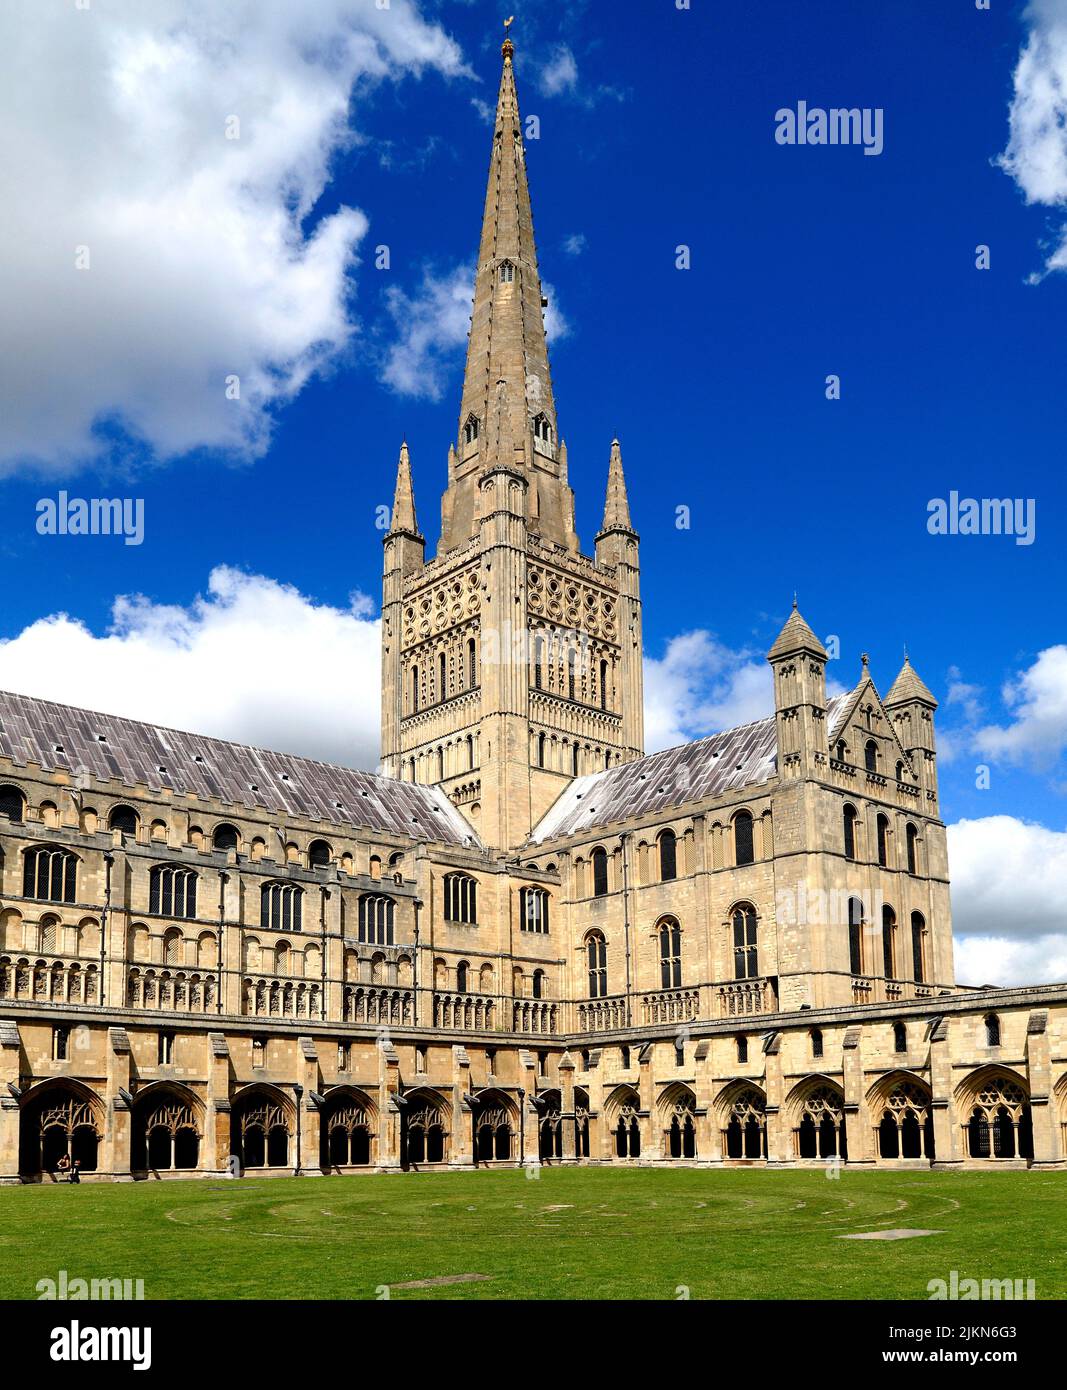 Cathédrale de Norwich, Spire , Nave, transept et cloîtres, architecture médiévale, Cathédrales, Norfolk, Angleterre, Royaume-Uni Banque D'Images